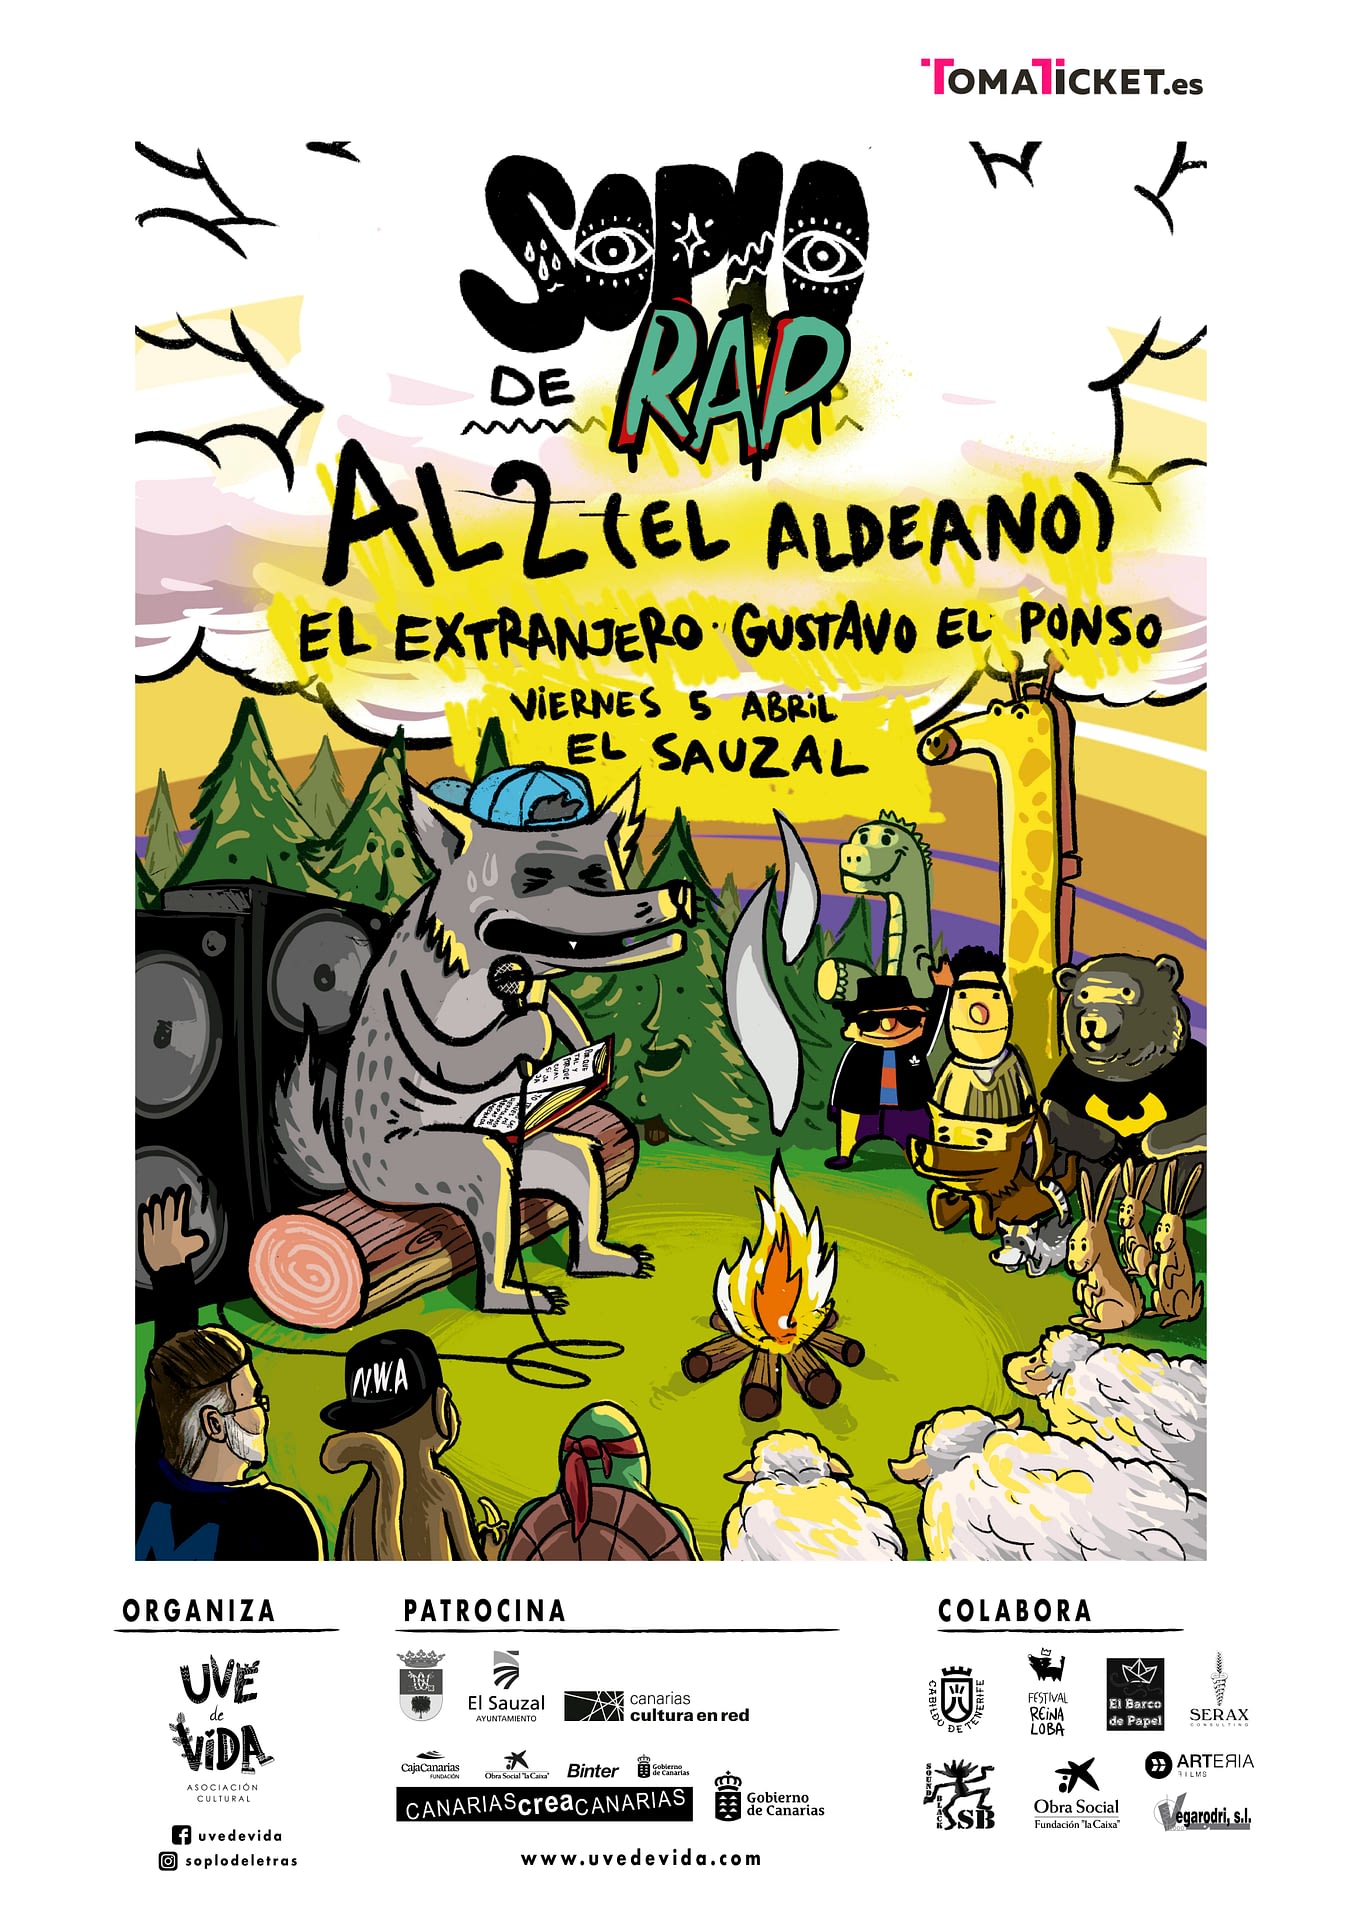 Soplo de Rap - AL2 El Aldeano